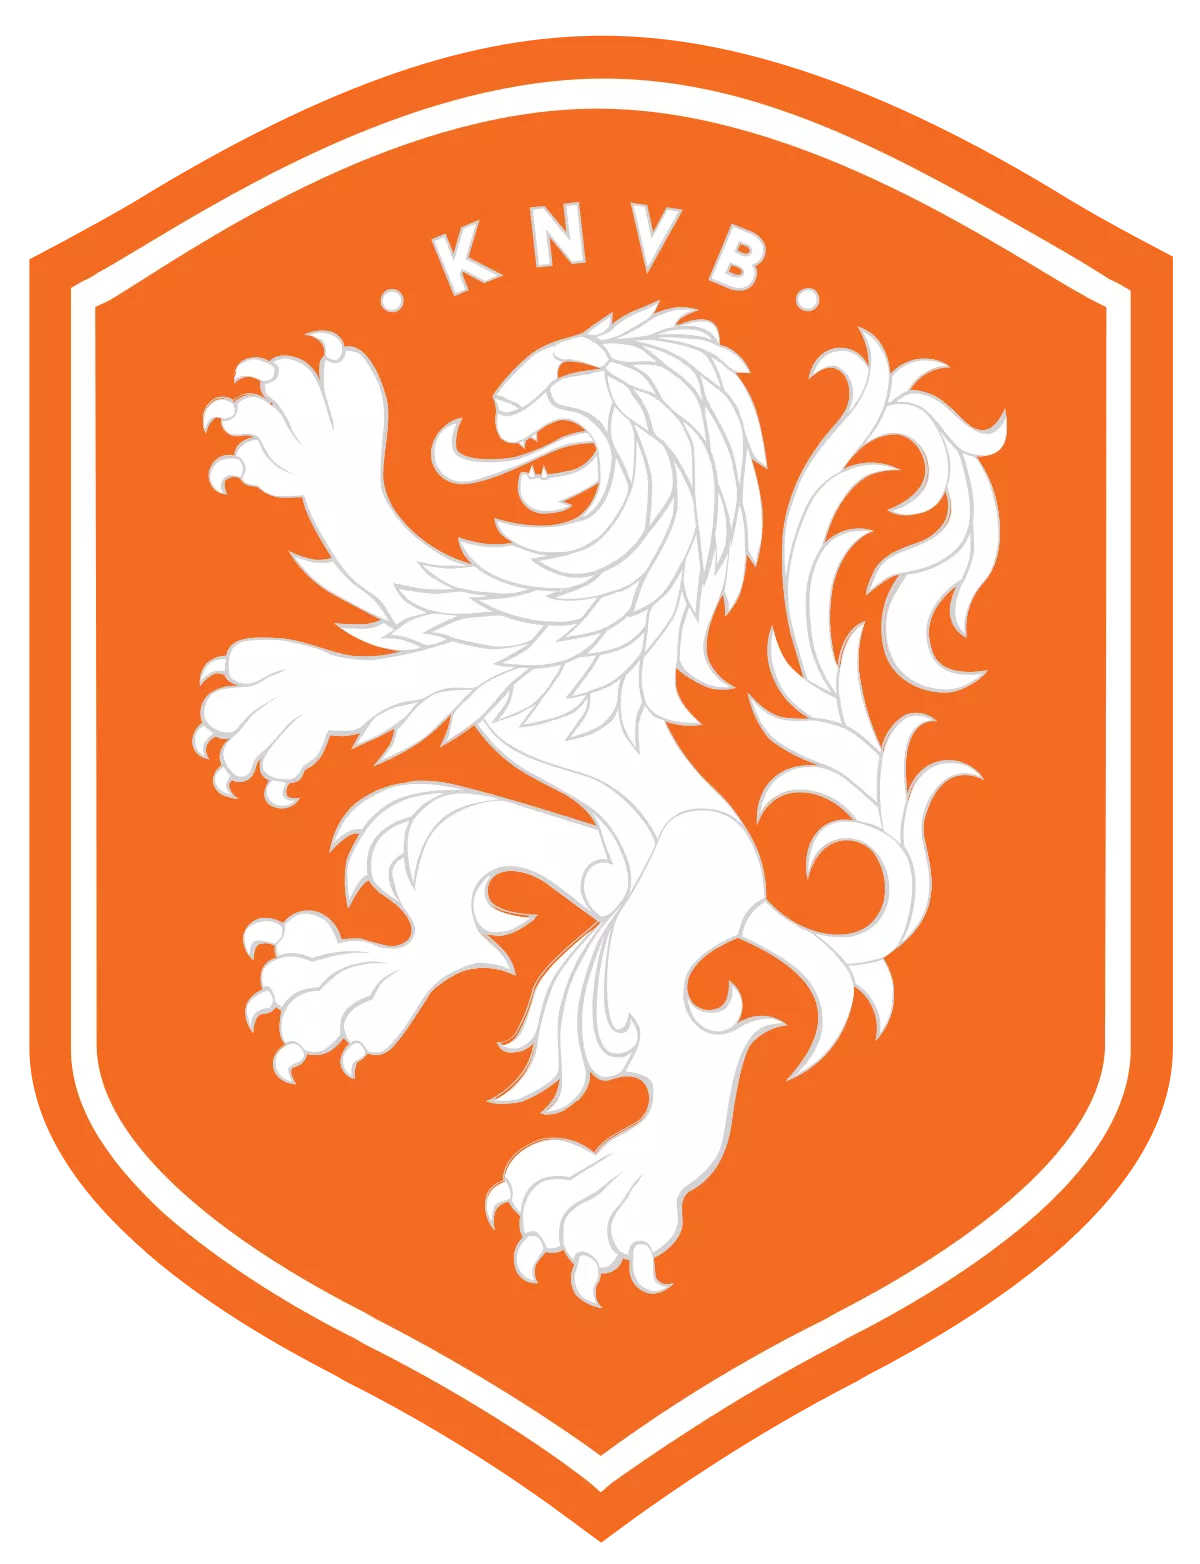 Netherlands - soccerdeal